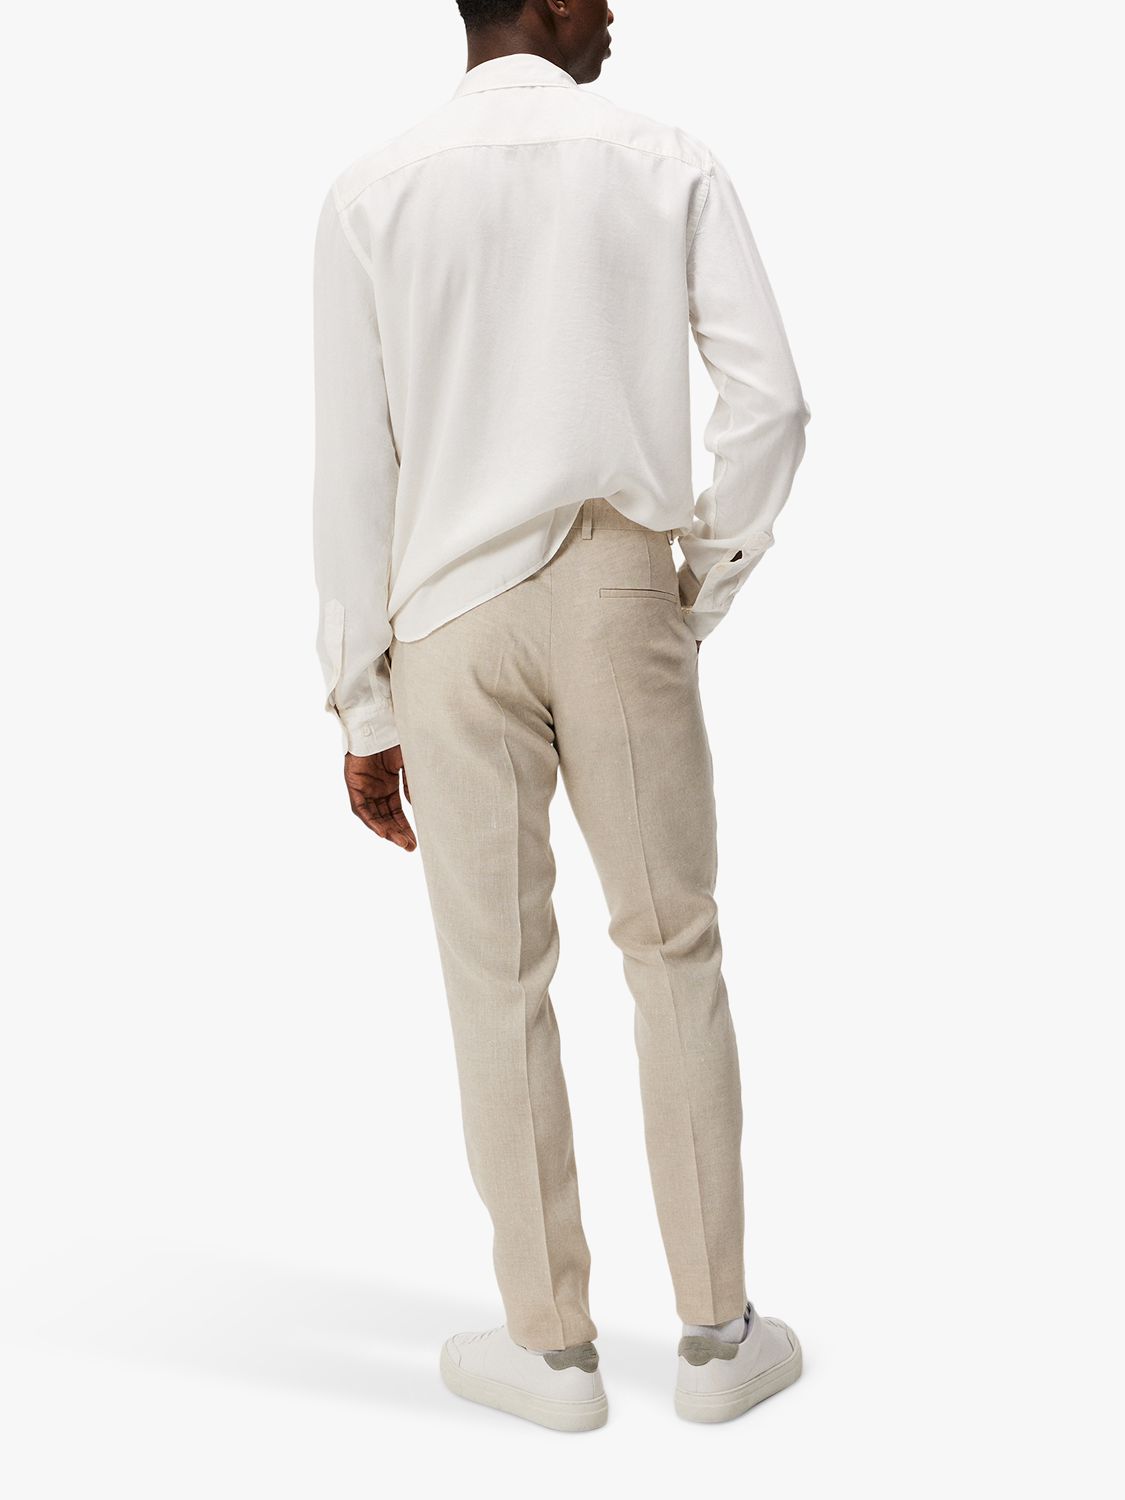 J.Lindeberg Grant Super Linen Trousers, Moonbeam, 32R